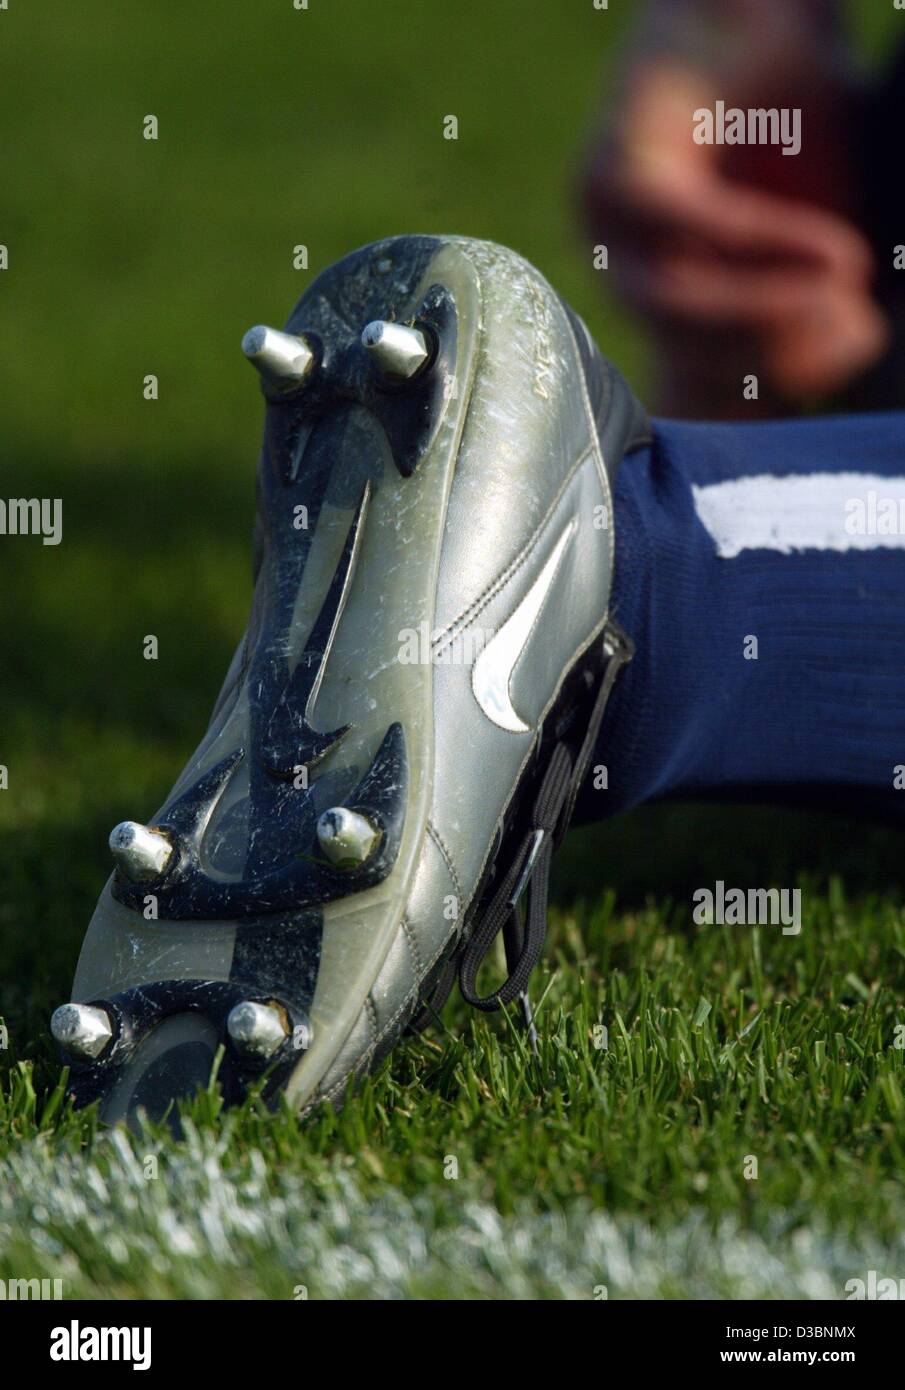 (Dpa) - La suela de un zapato de fútbol con espárragos de un jugador del club de fútbol alemán Hertha BSC Berlin se observa durante un partido de fútbol en Berlín, el 12 de abril de 2003. Foto de stock